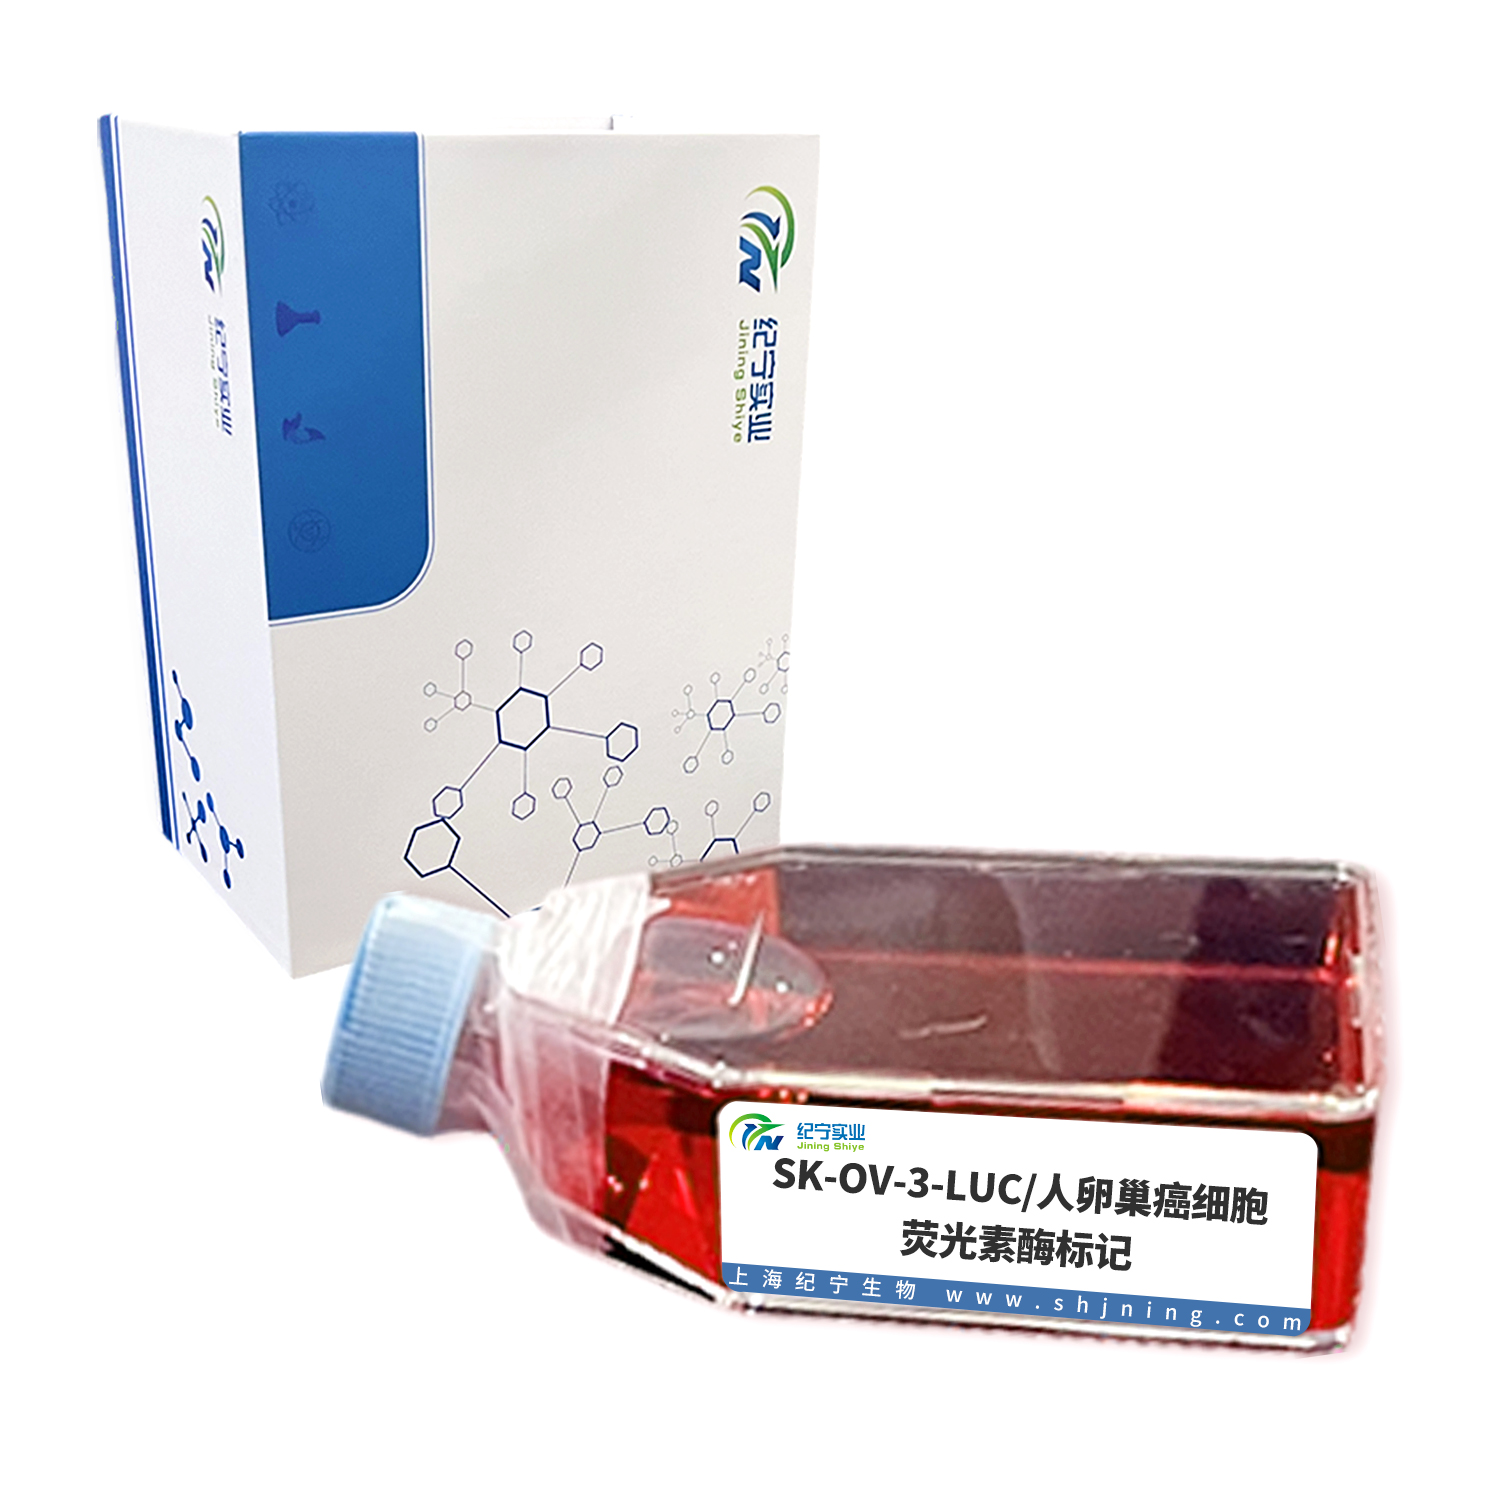 SK-OV-3-LUC/人卵巢癌细胞-荧光素酶标记